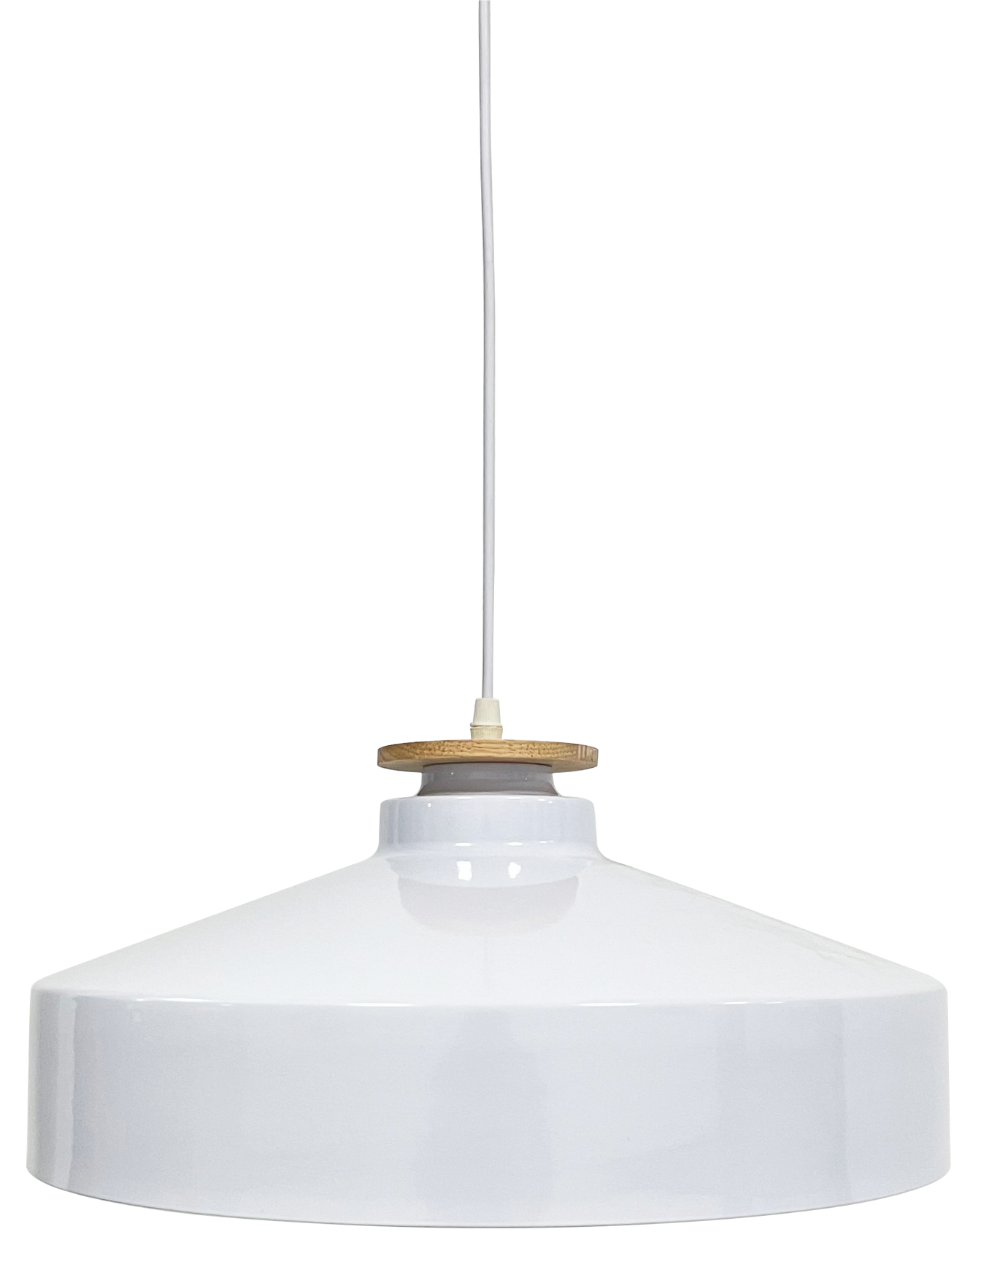 Elegante Pendelleuchte in Weiß, runde Form, aus Stahl, E27-Fassung, IP20, Ø40 cm